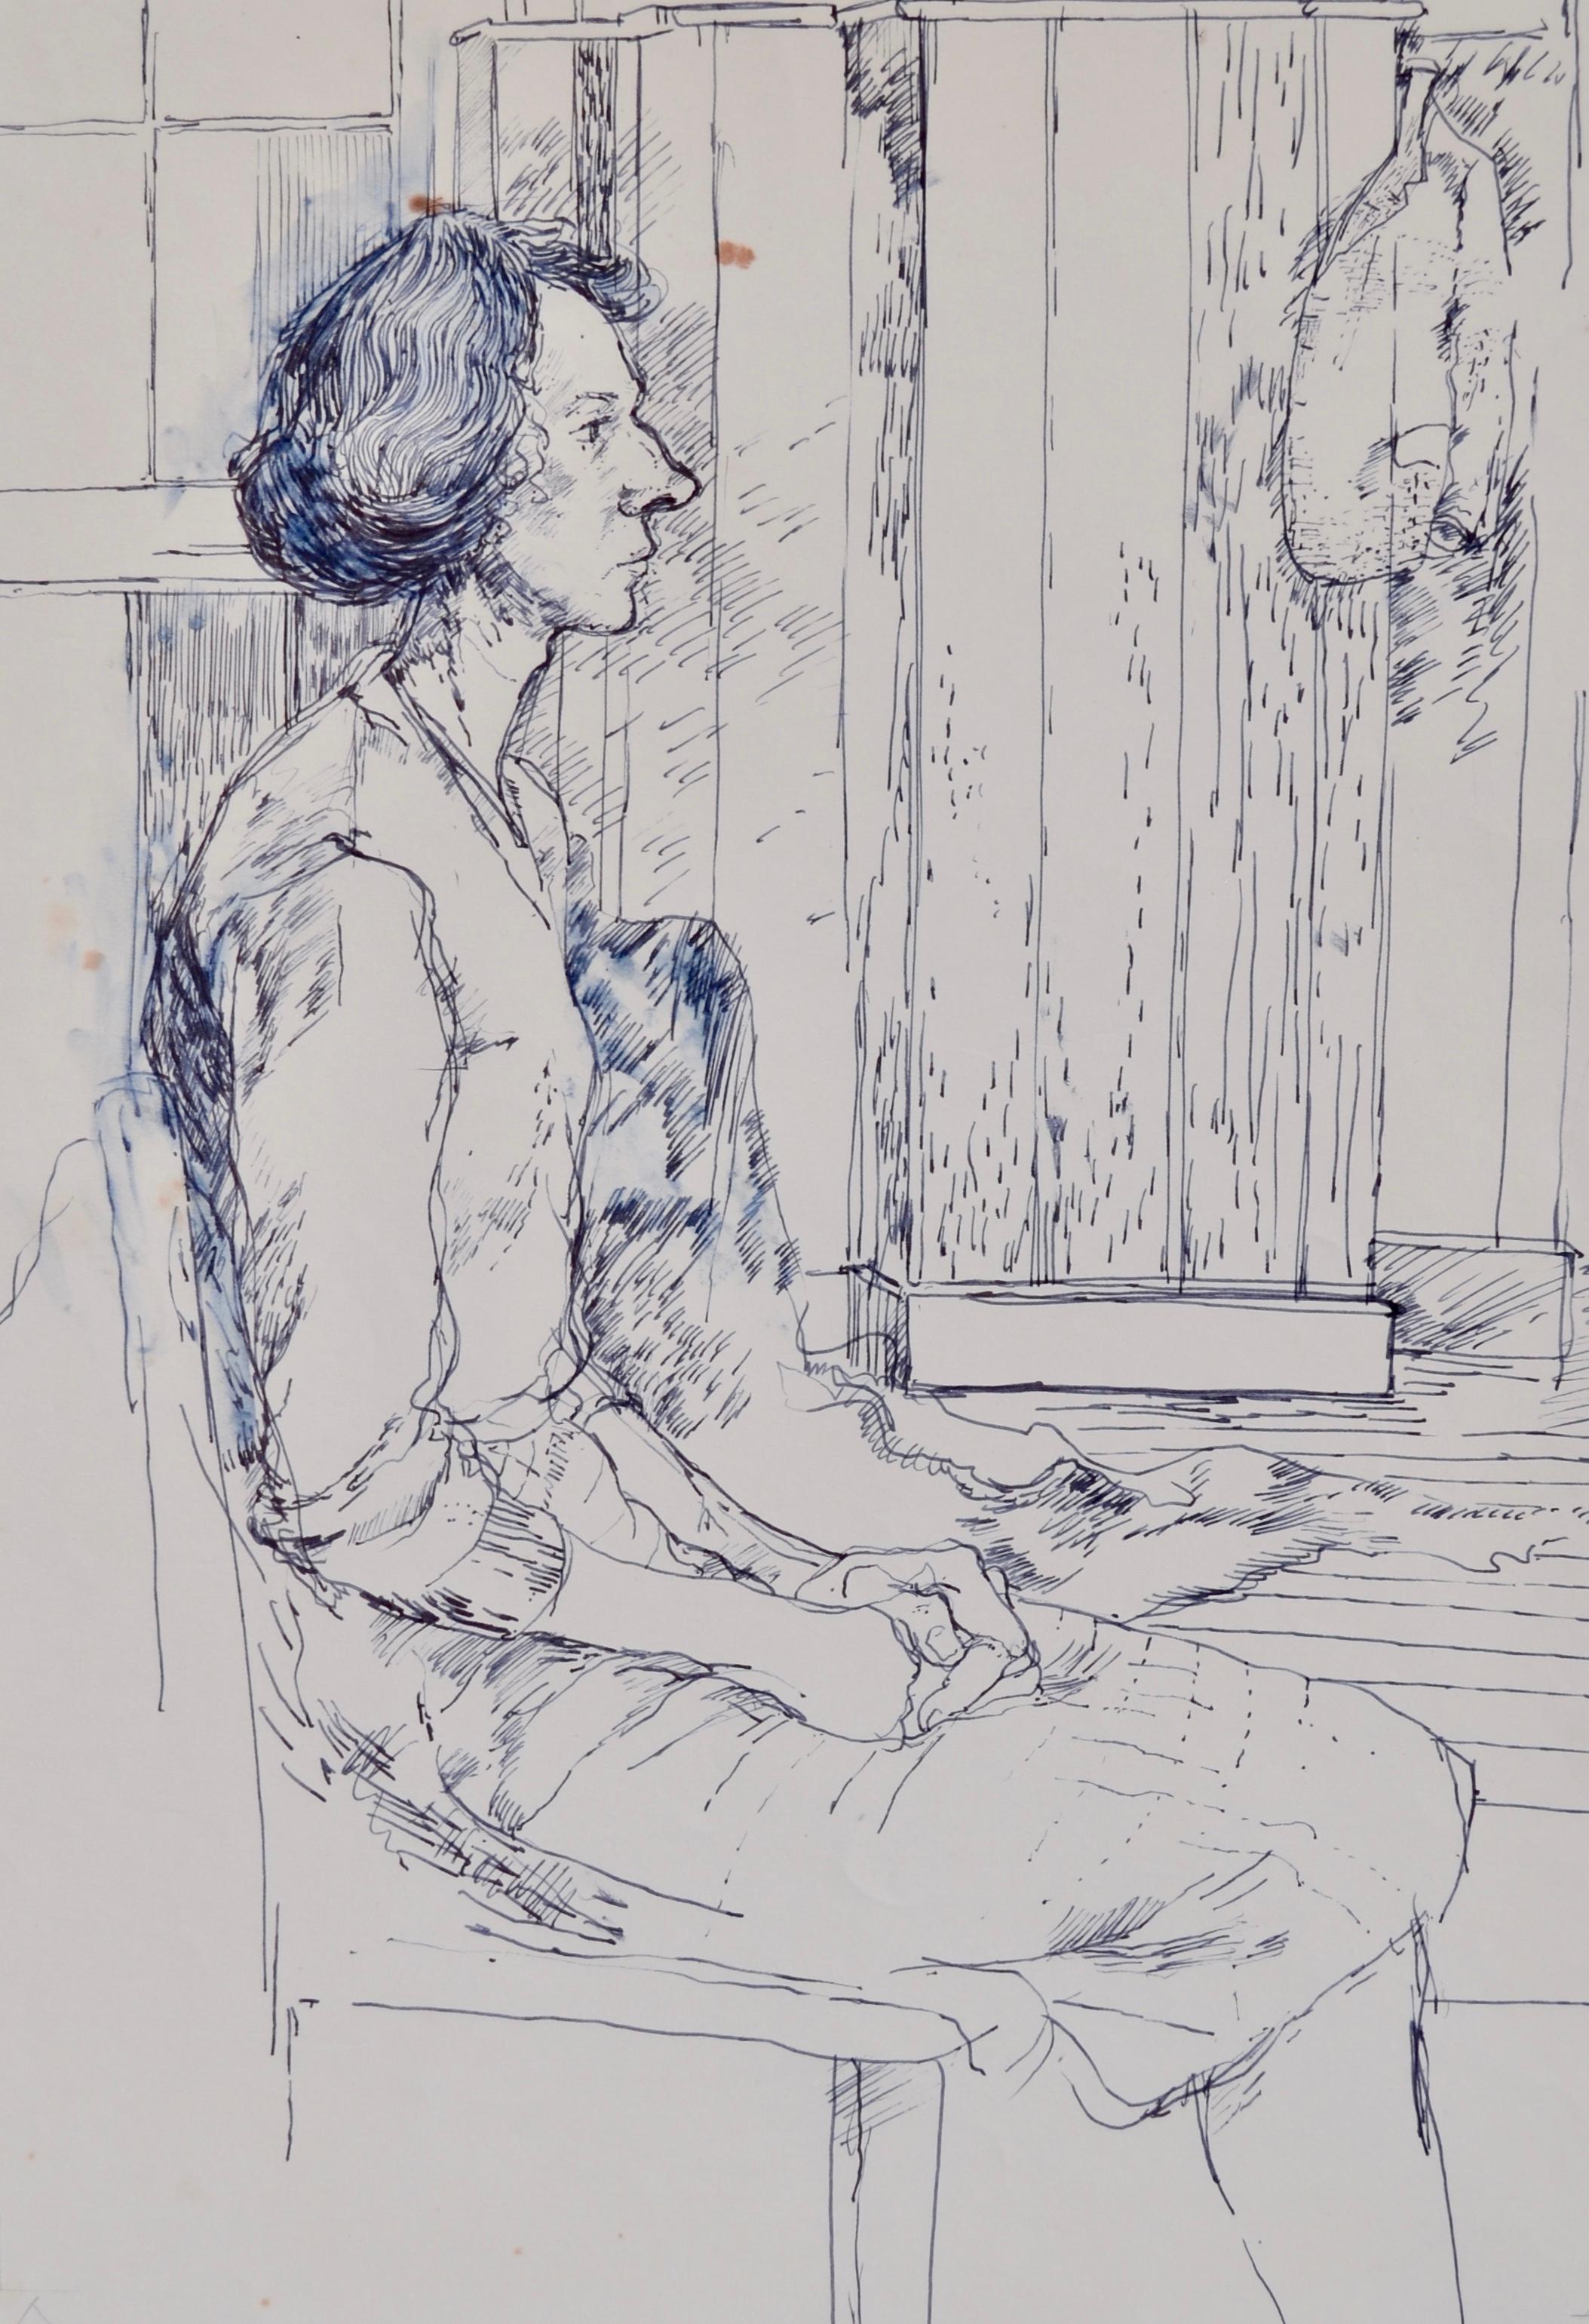 CAROLYN SERGENT
(1937-2018)

Femme assise de profil

Plume et encre avec lavis, non encadré

45,5 par 32 cm, 18 par 12 ½ in. 
(format du montage 62 x 47 cm, 24 ½ x 18 ½ in.)

Carolyn Cann a étudié à la Wimbledon School of Art (1955-59) et à la Royal